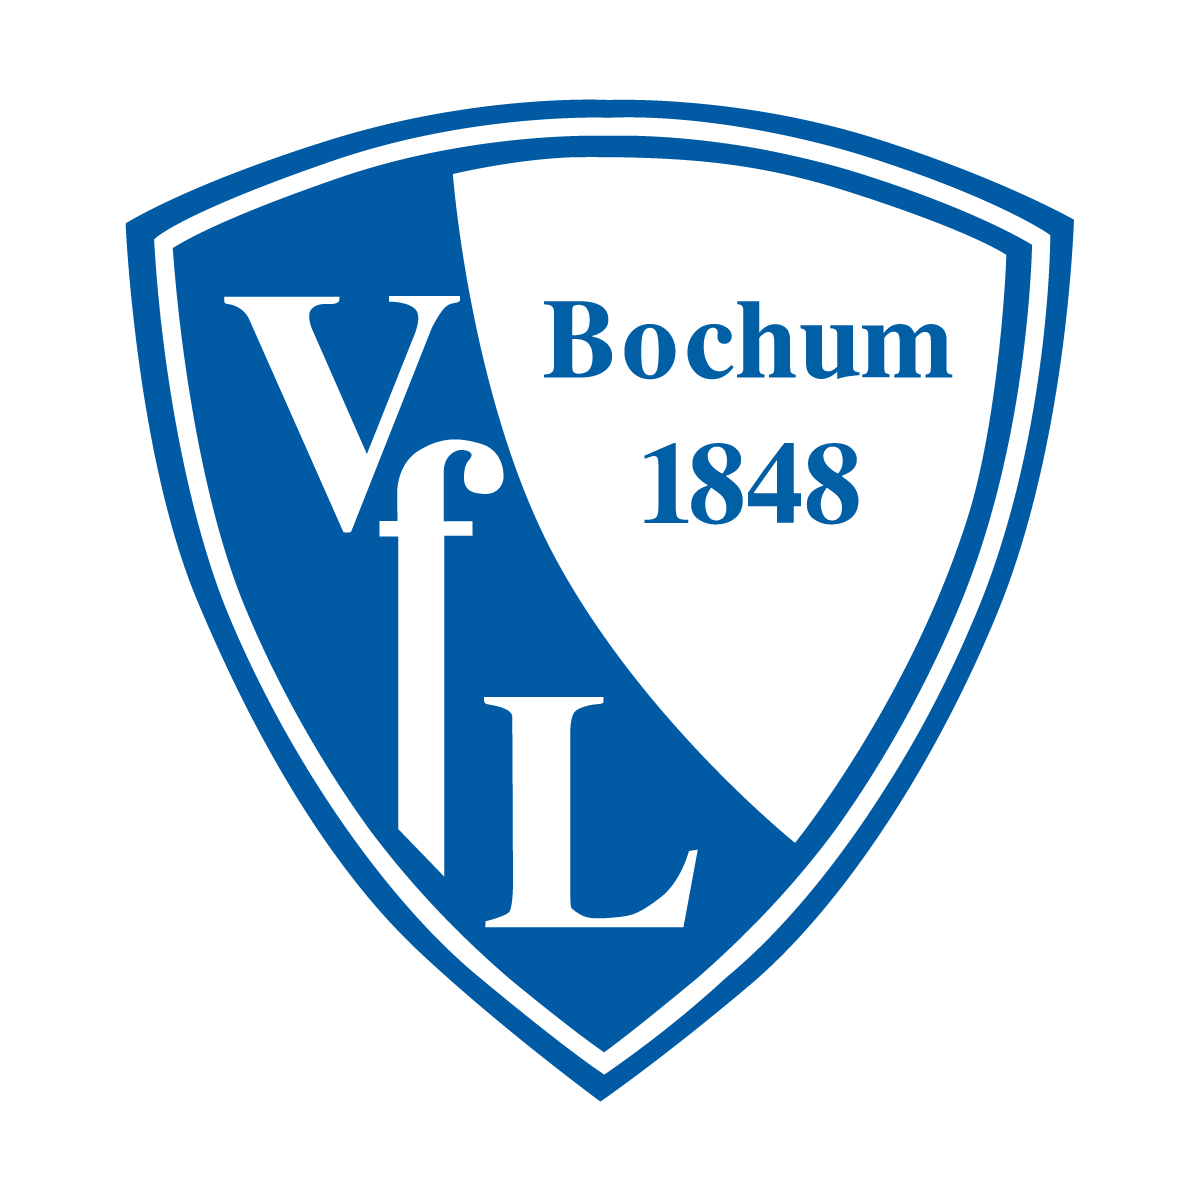 VfL Bochum 1848 U12